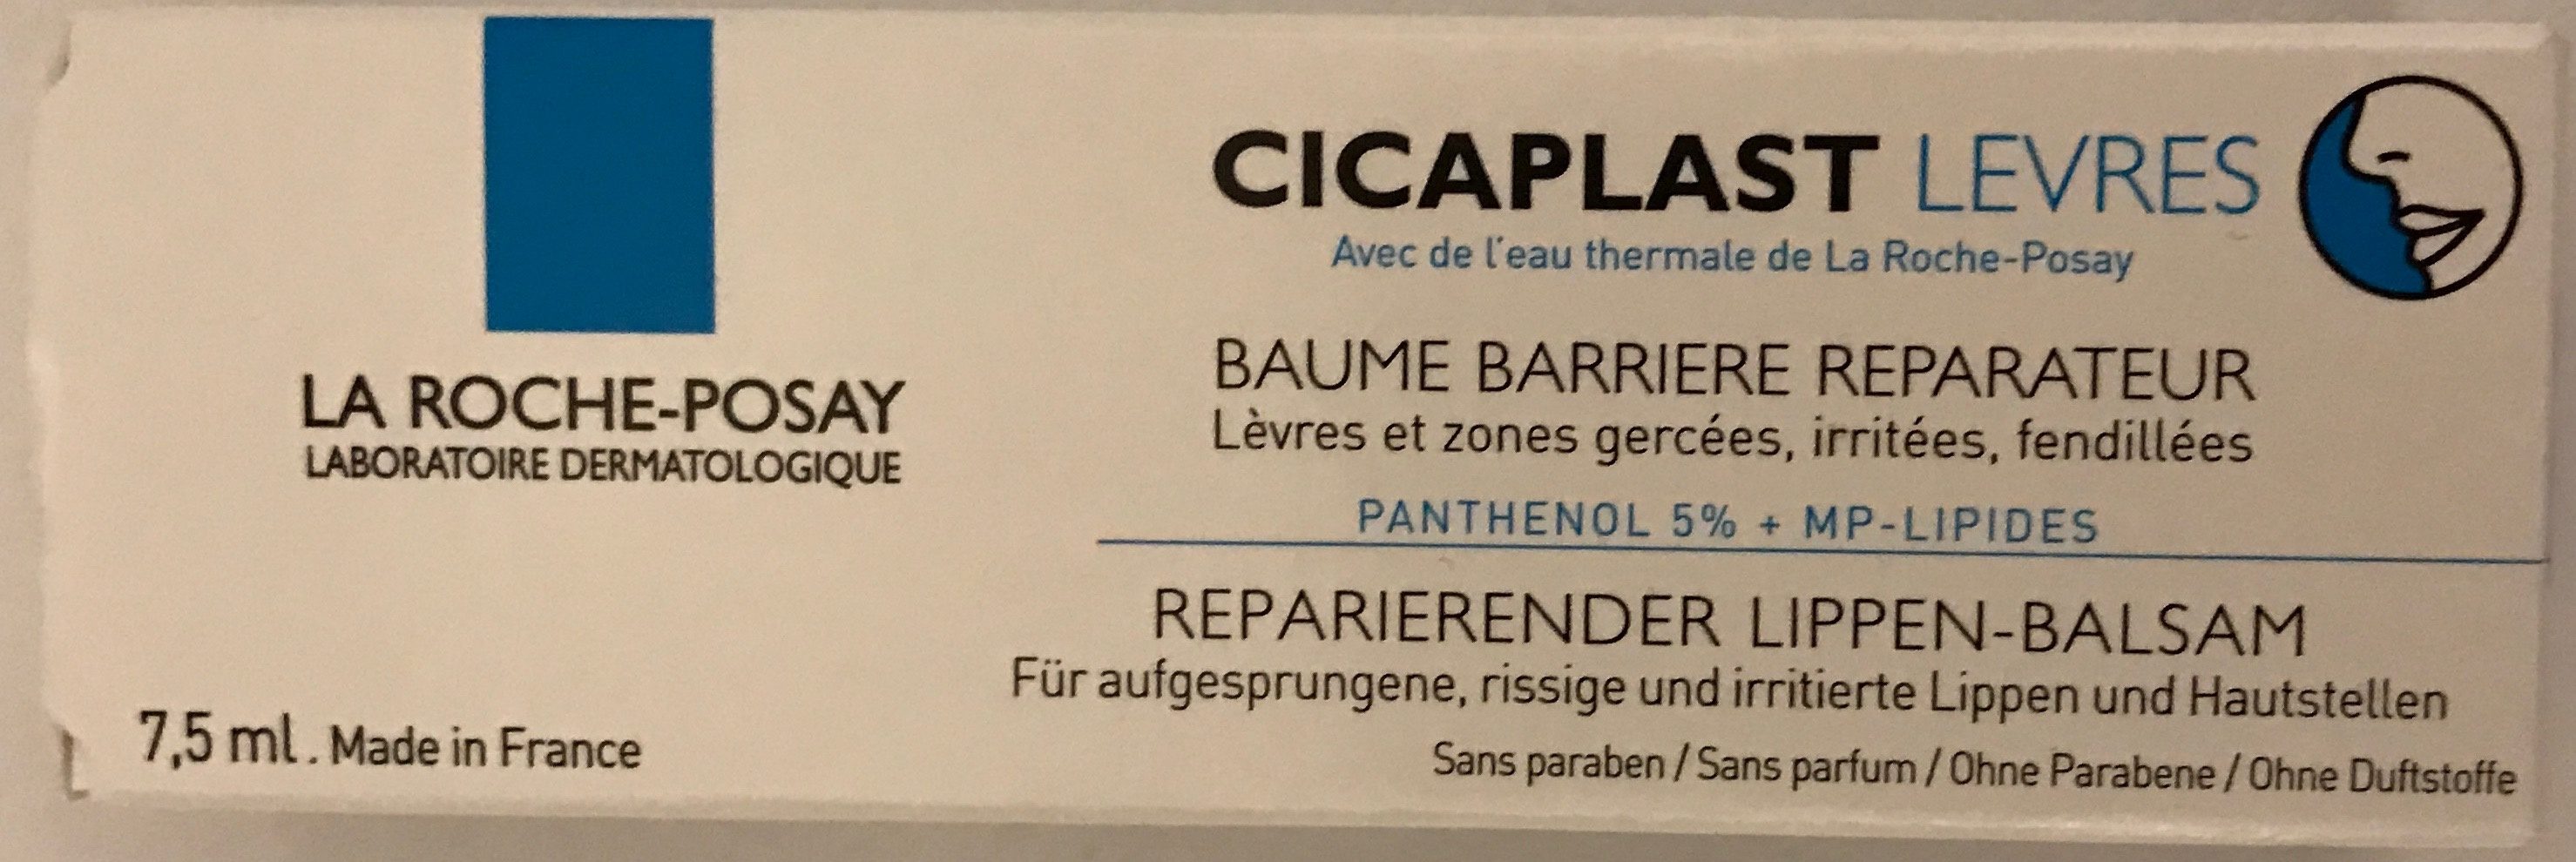 Cicaplast Lèvres Baume Barrière Réparateur - Product - fr